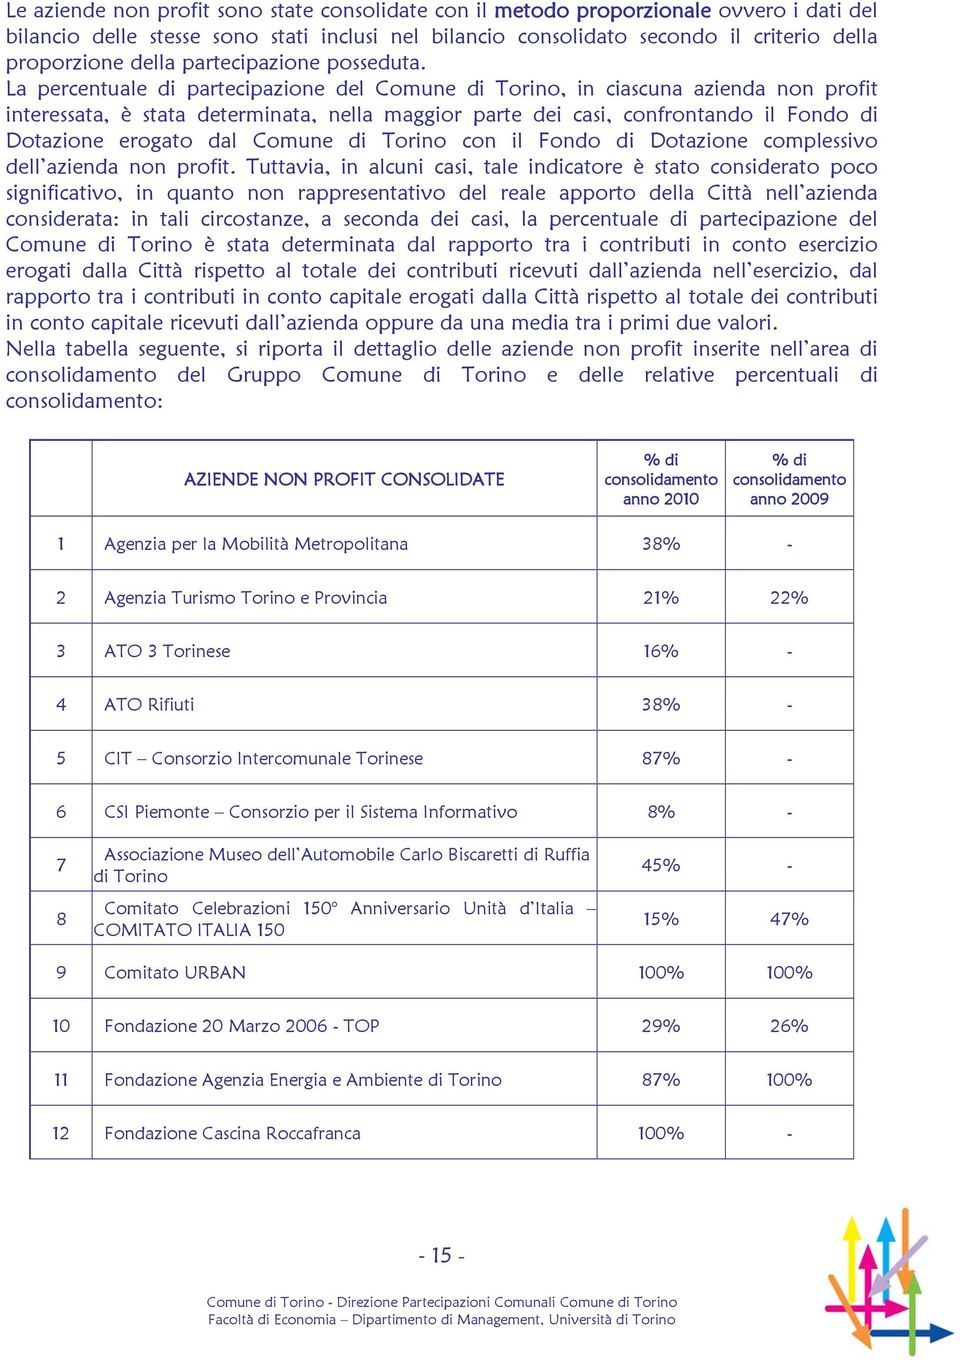 La percentuale di partecipazione del Comune di Torino, in ciascuna azienda non profit interessata, è stata determinata, nella maggior parte dei casi, confrontando il Fondo di Dotazione erogato dal